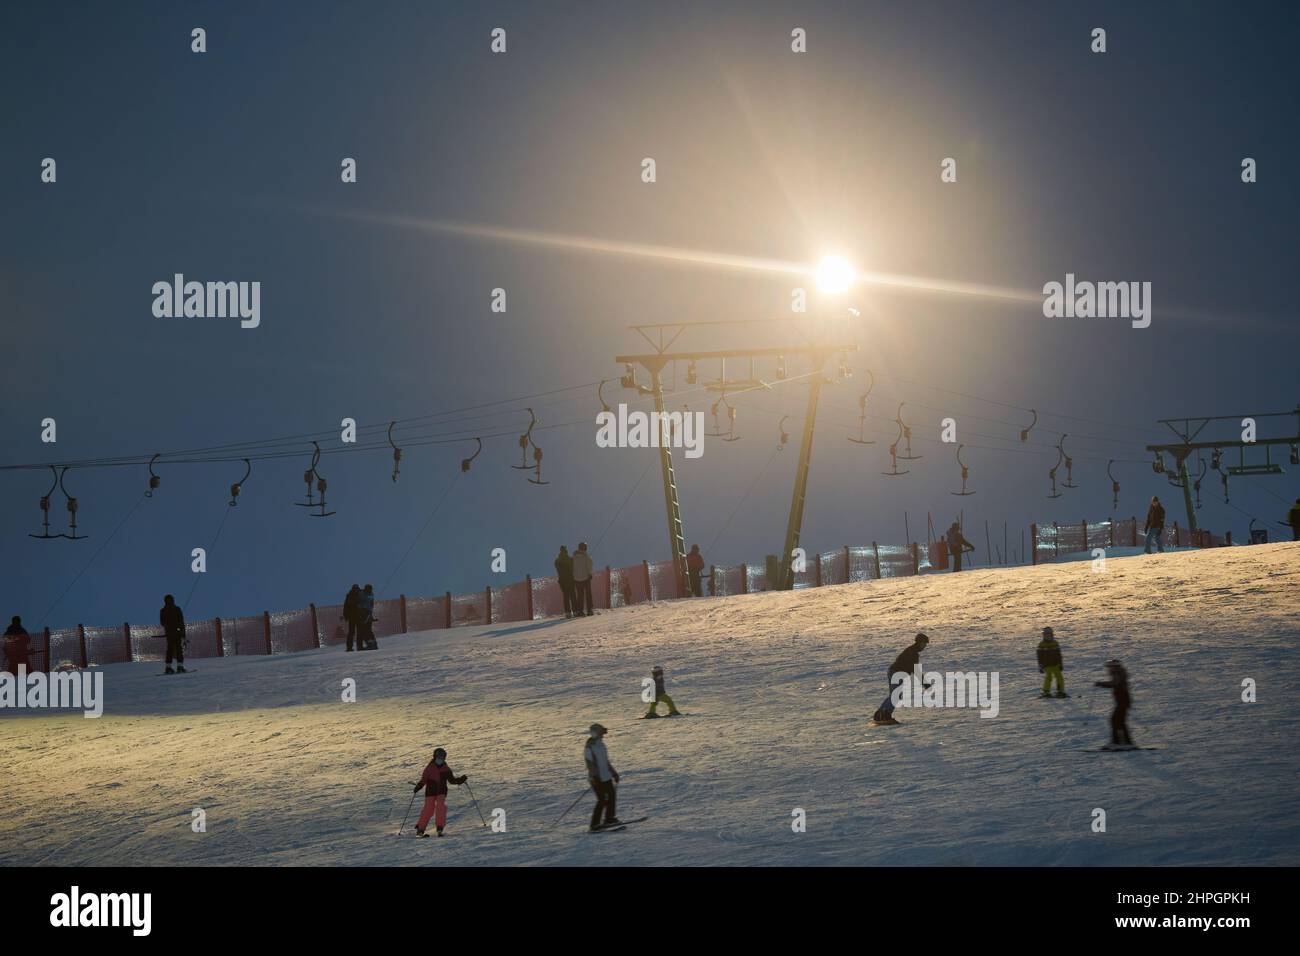 Treffelhausen, Deutschland - 28. Januar 2022: Schlepplift nachts mit Beleuchtung in Betrieb. Wintersportler auf den Pisten im Schnee. Männer und Frauen Stockfoto